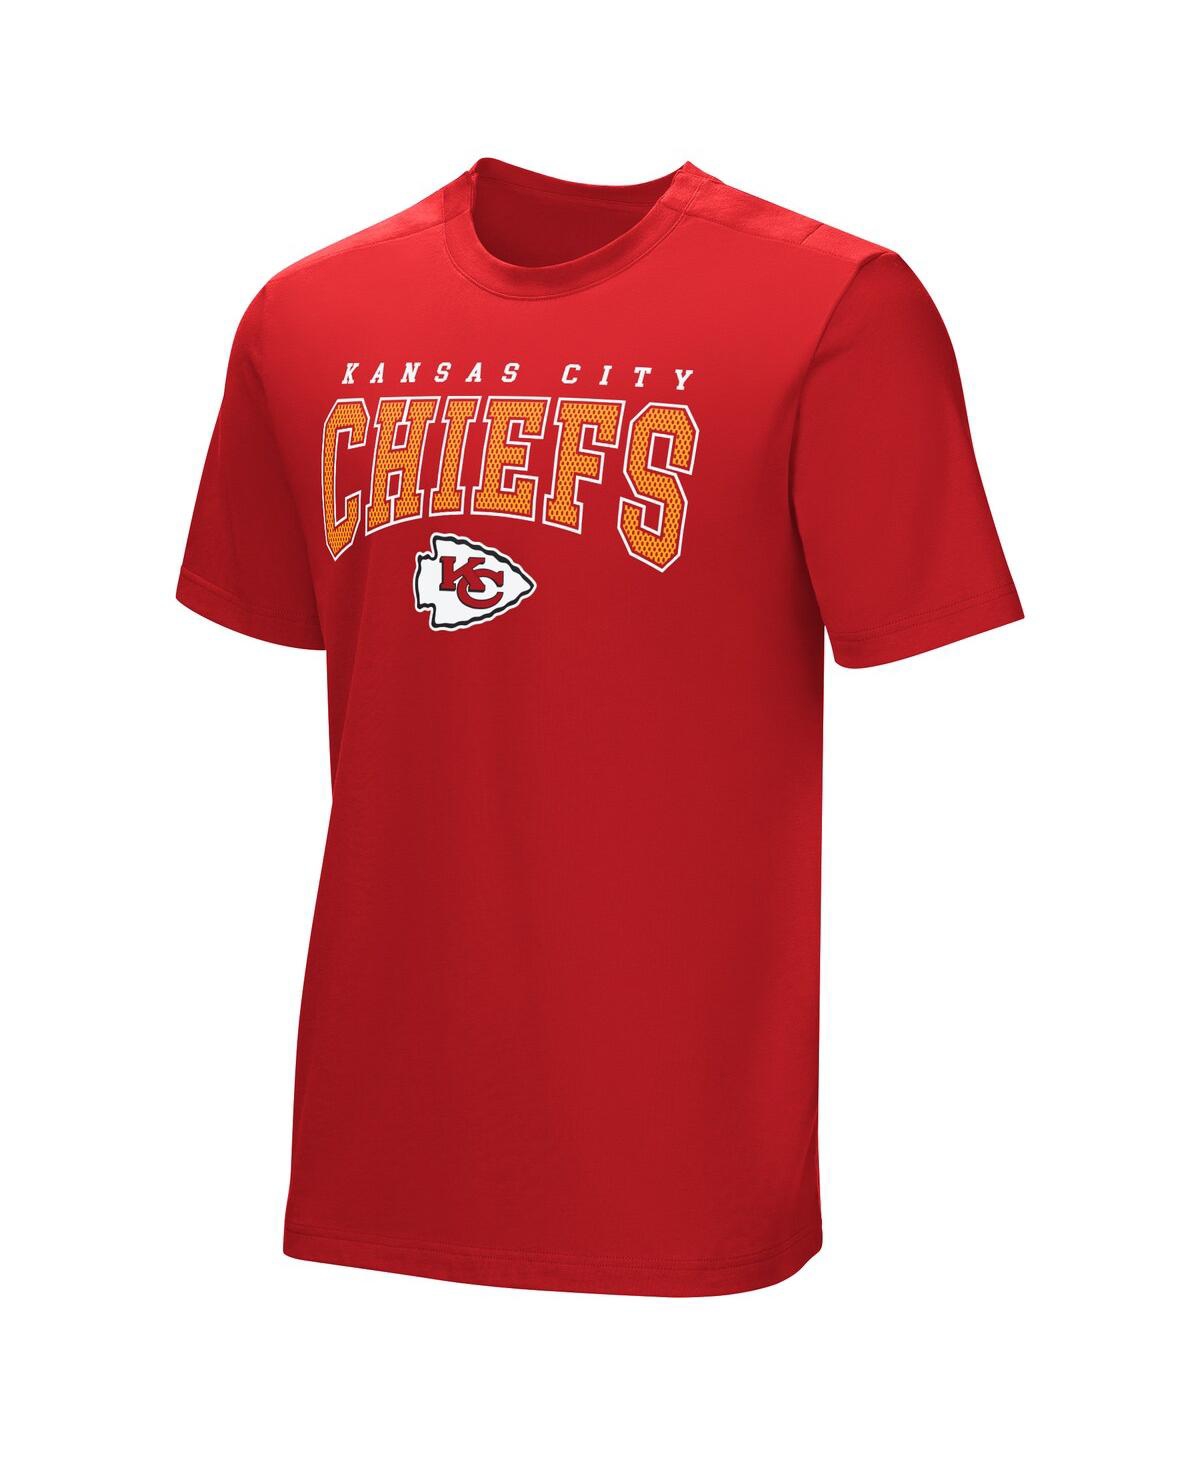 Shop Nfl Properties Men's Red Kansas City Chiefs Home Team Adaptive T-shirt